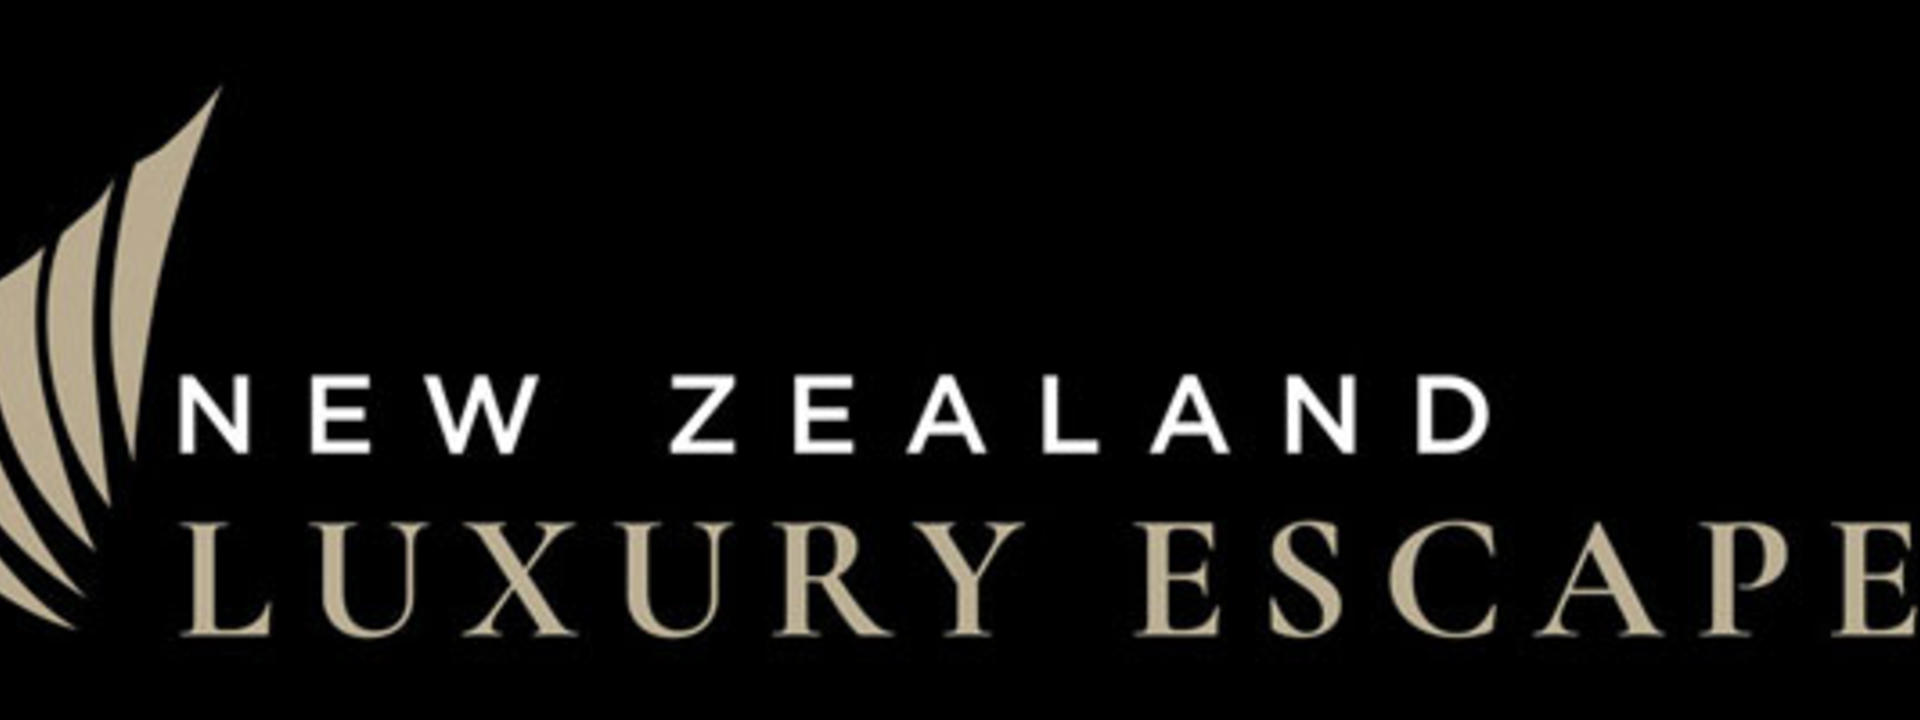 nz-luxury-escapes-logo-1200.jpg